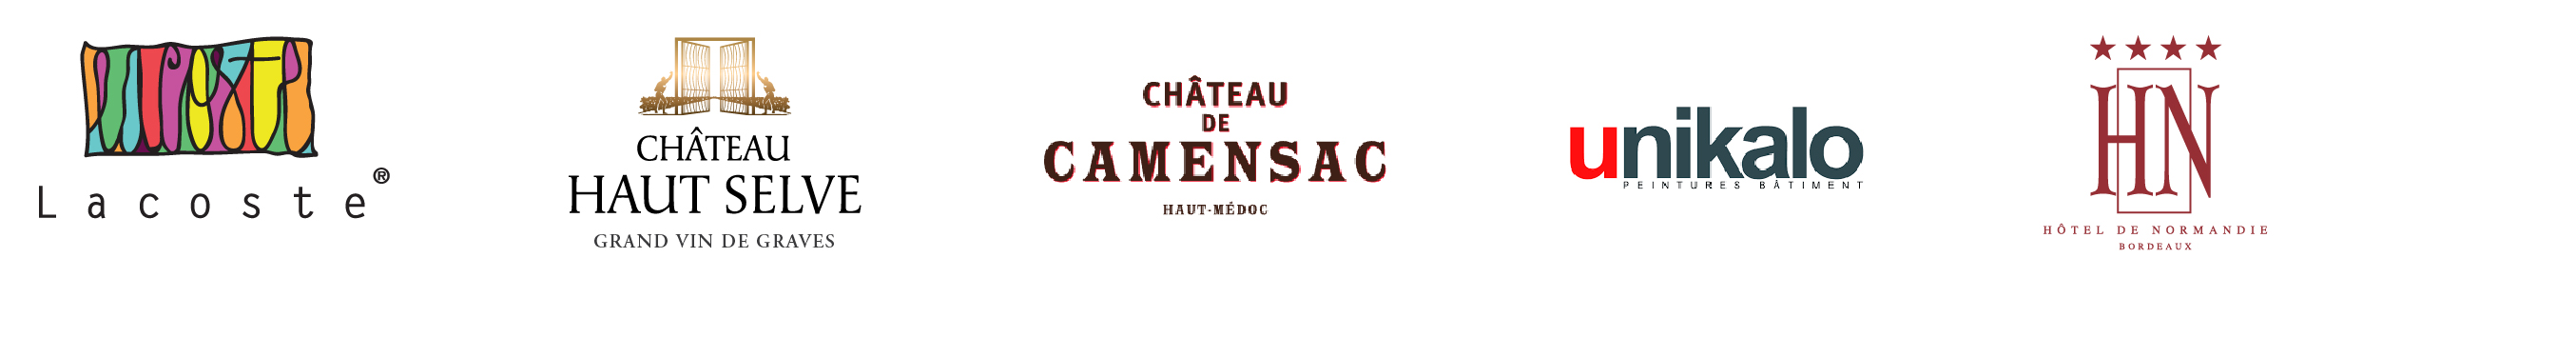 Logos Lacoste Traiteur + Château Haut Selve + Château de Camensac + Unikalo + Hôtel de Normandie